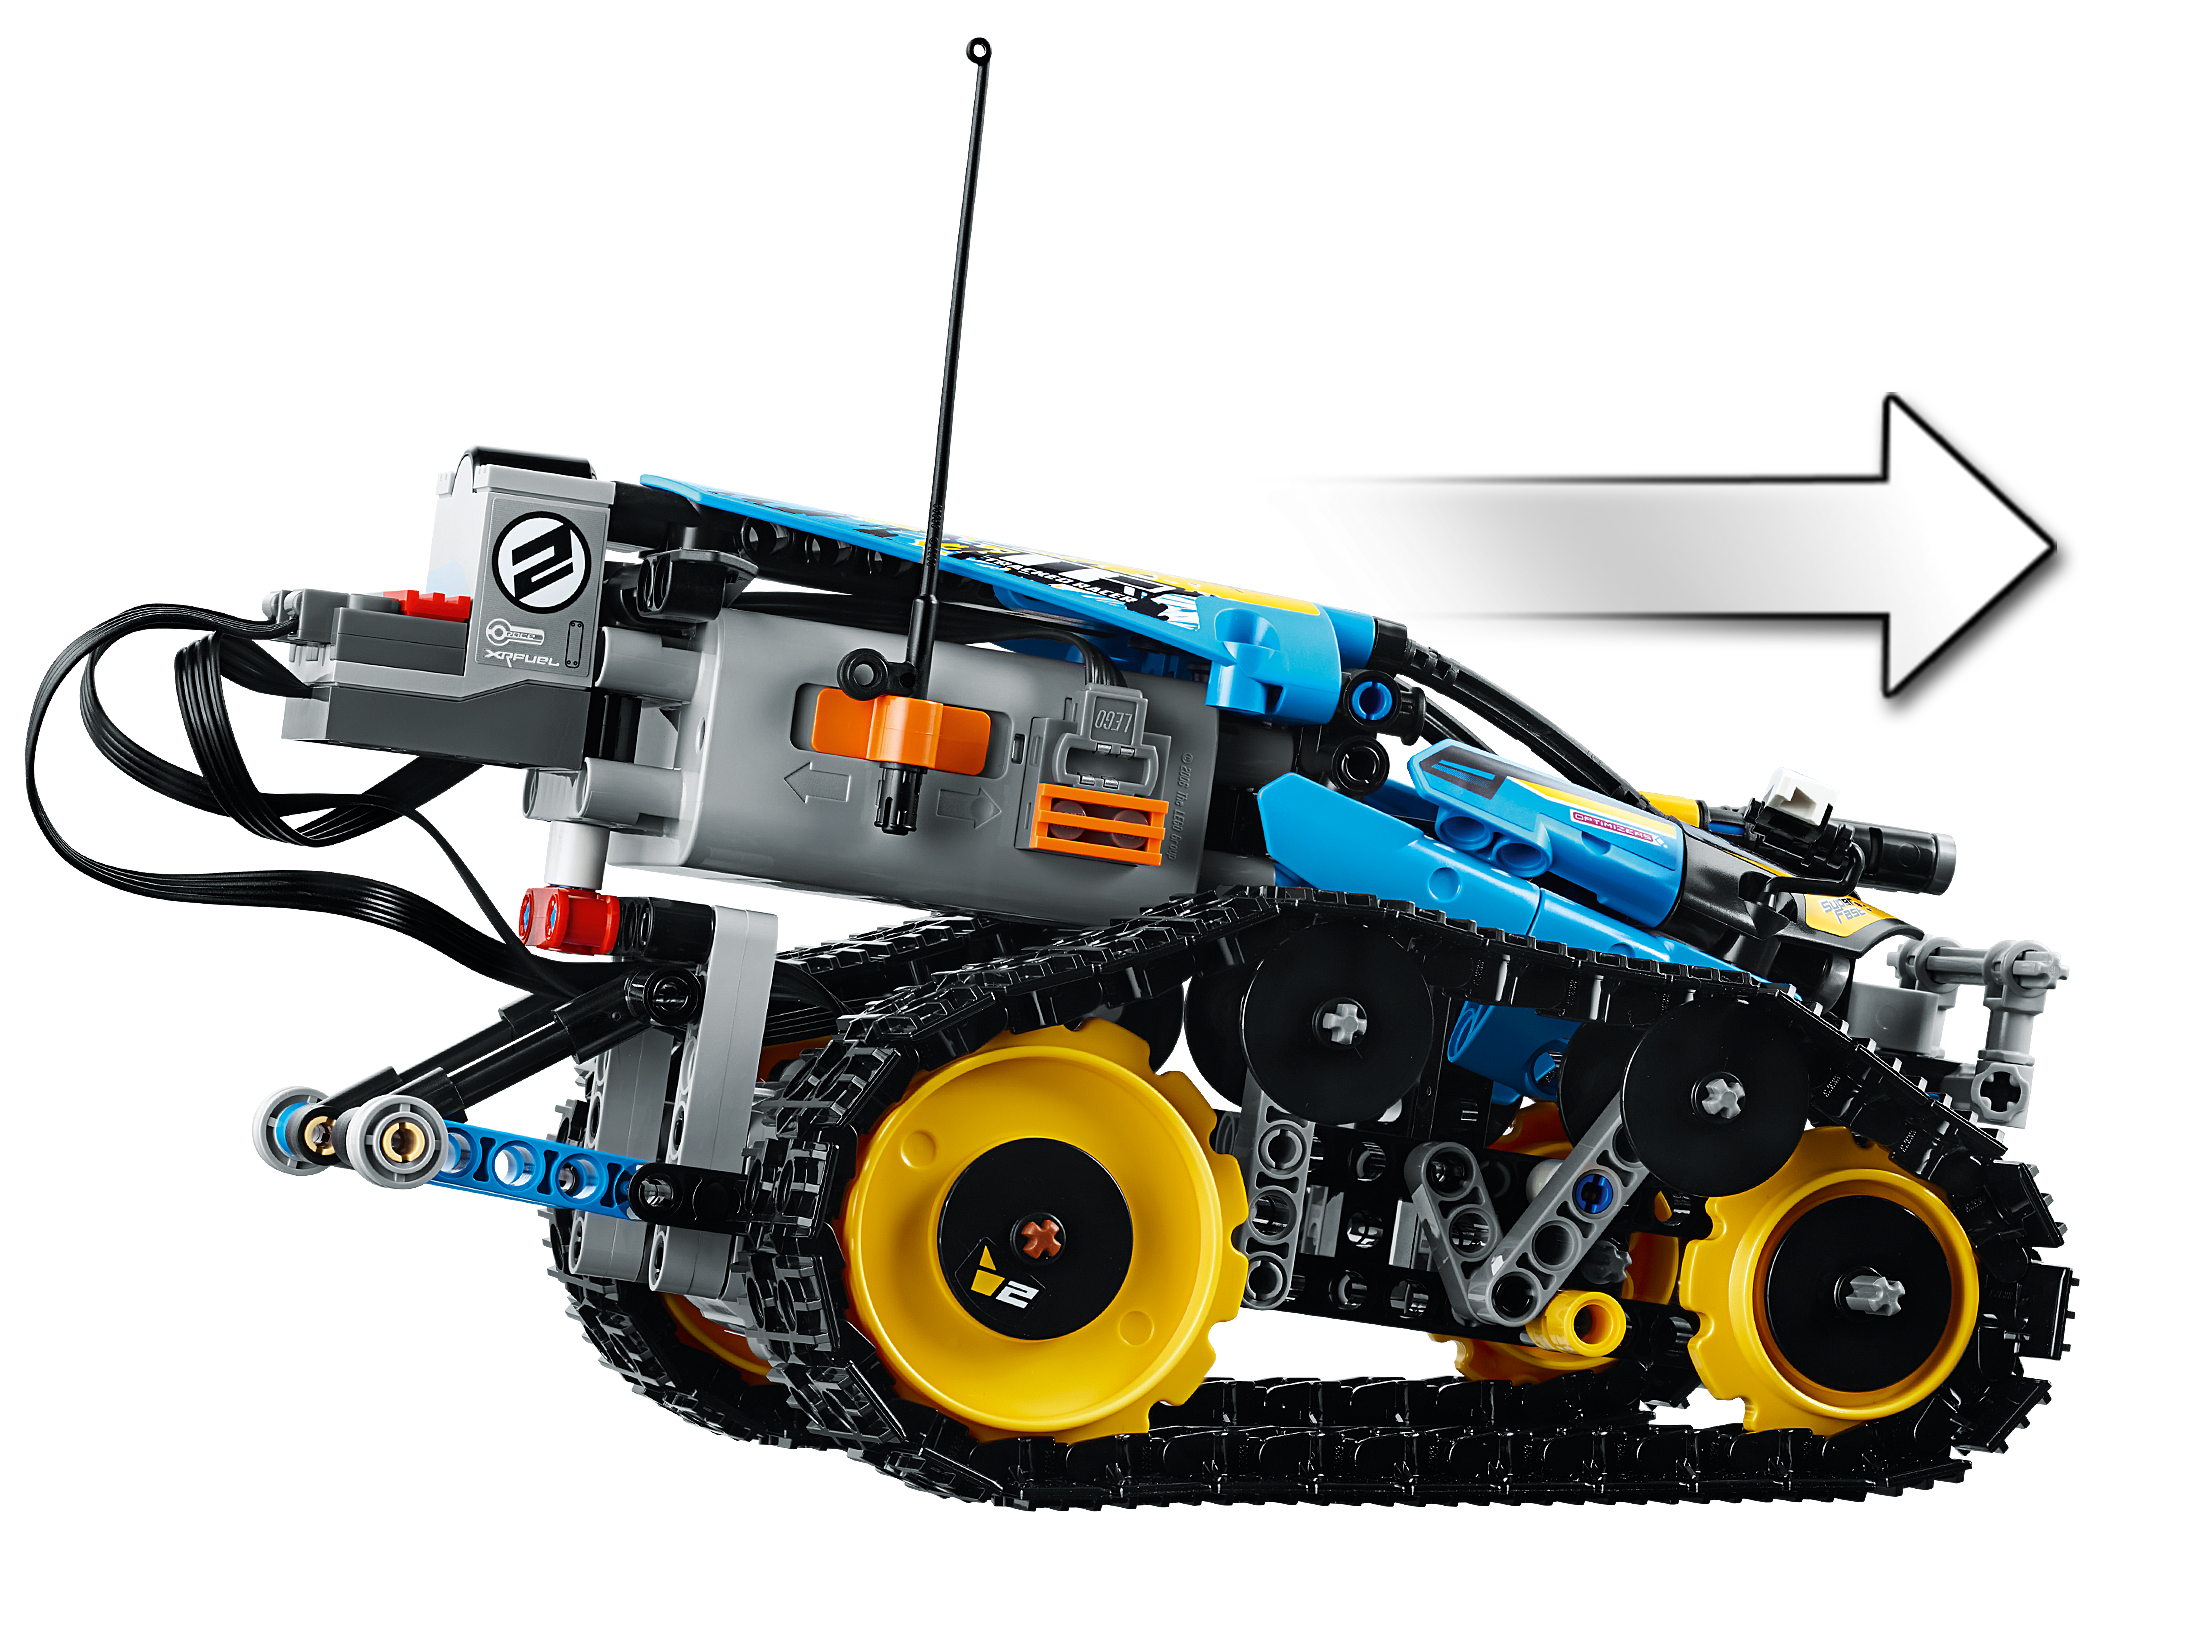 Lego Technic - Le bolide télécommandé - 42095 - Lego